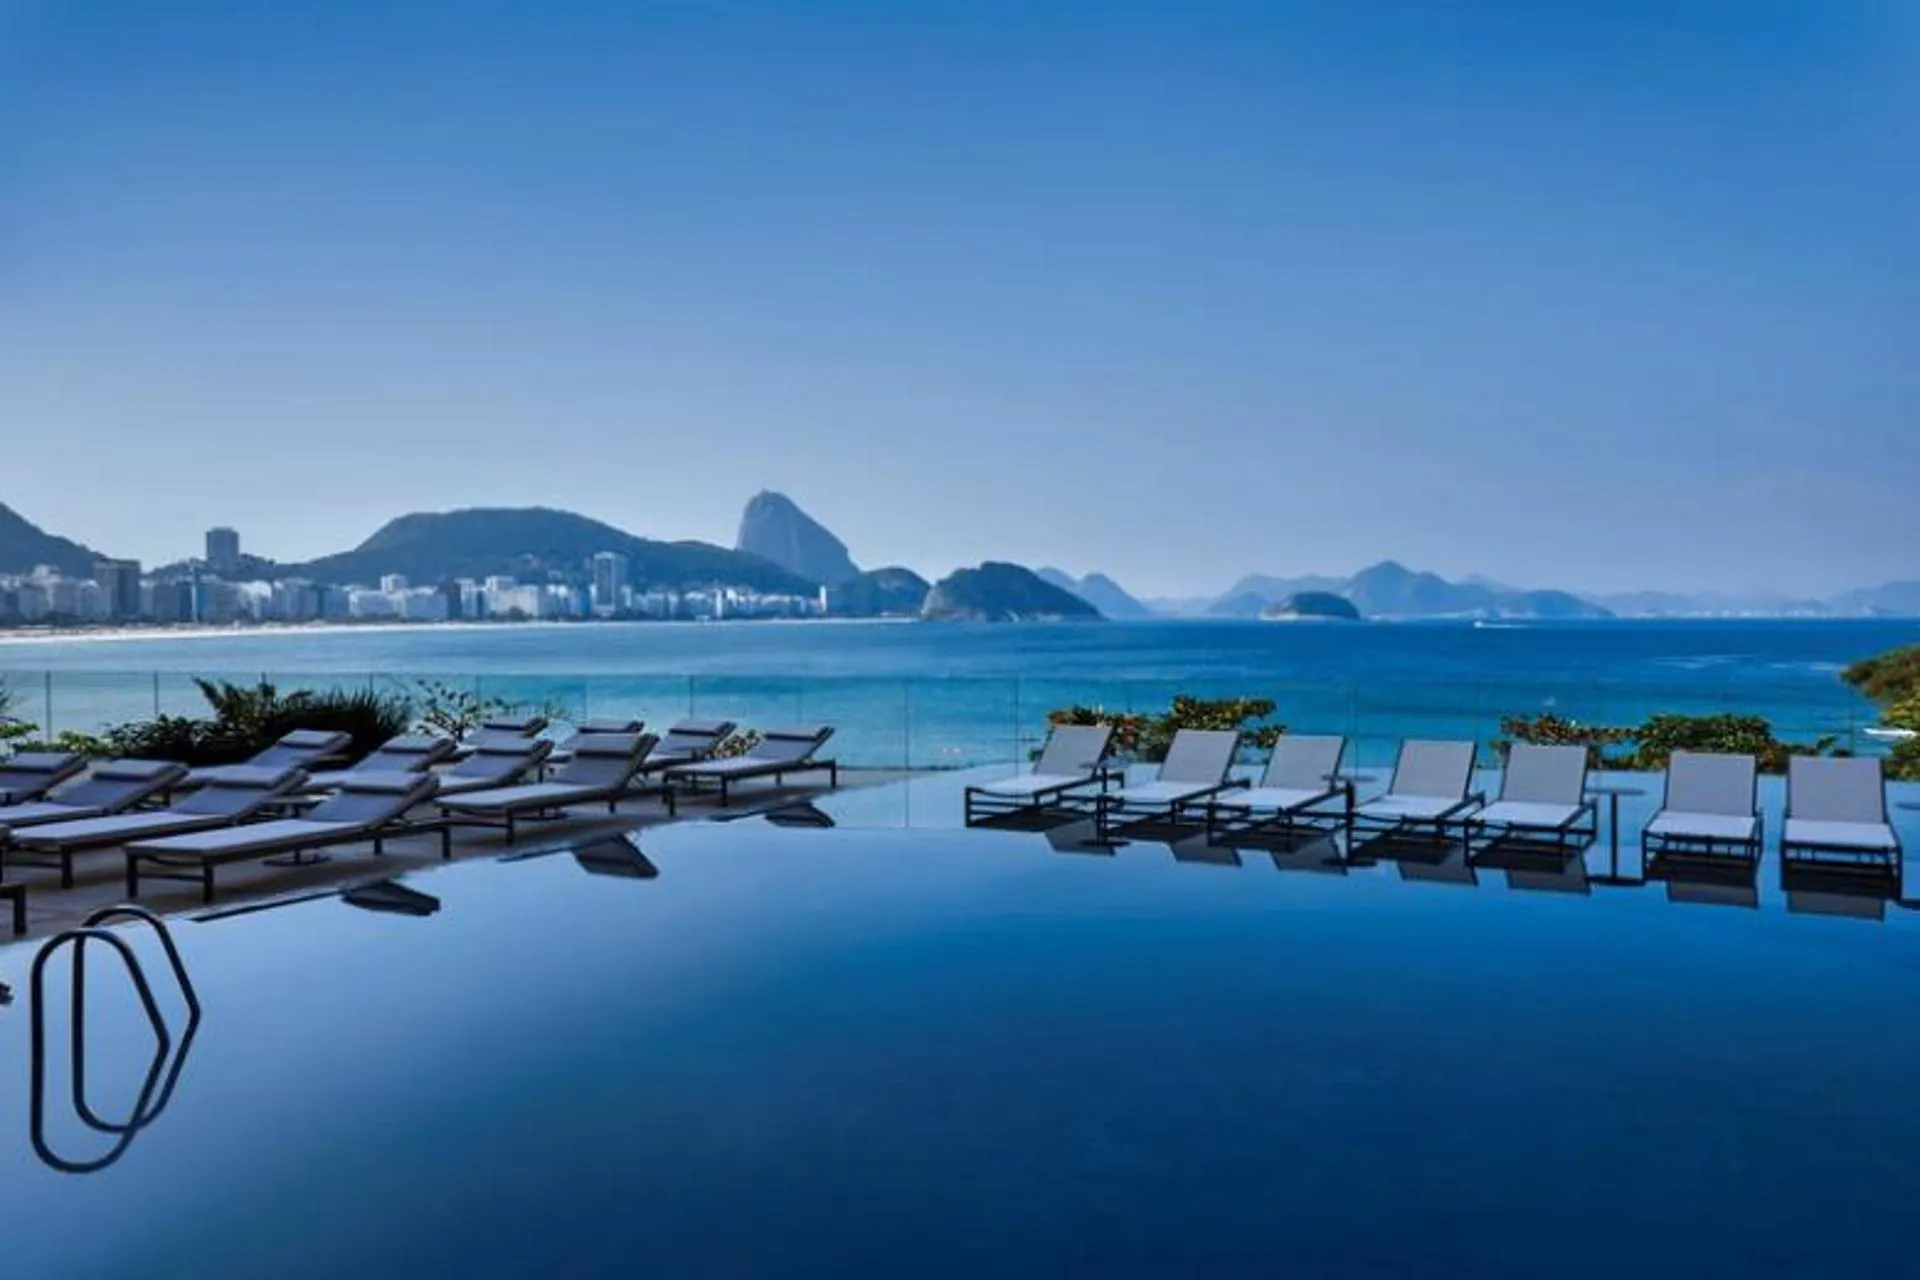 92 hoteles Accor de Sudamérica premiados en Traveller's Choice 2022